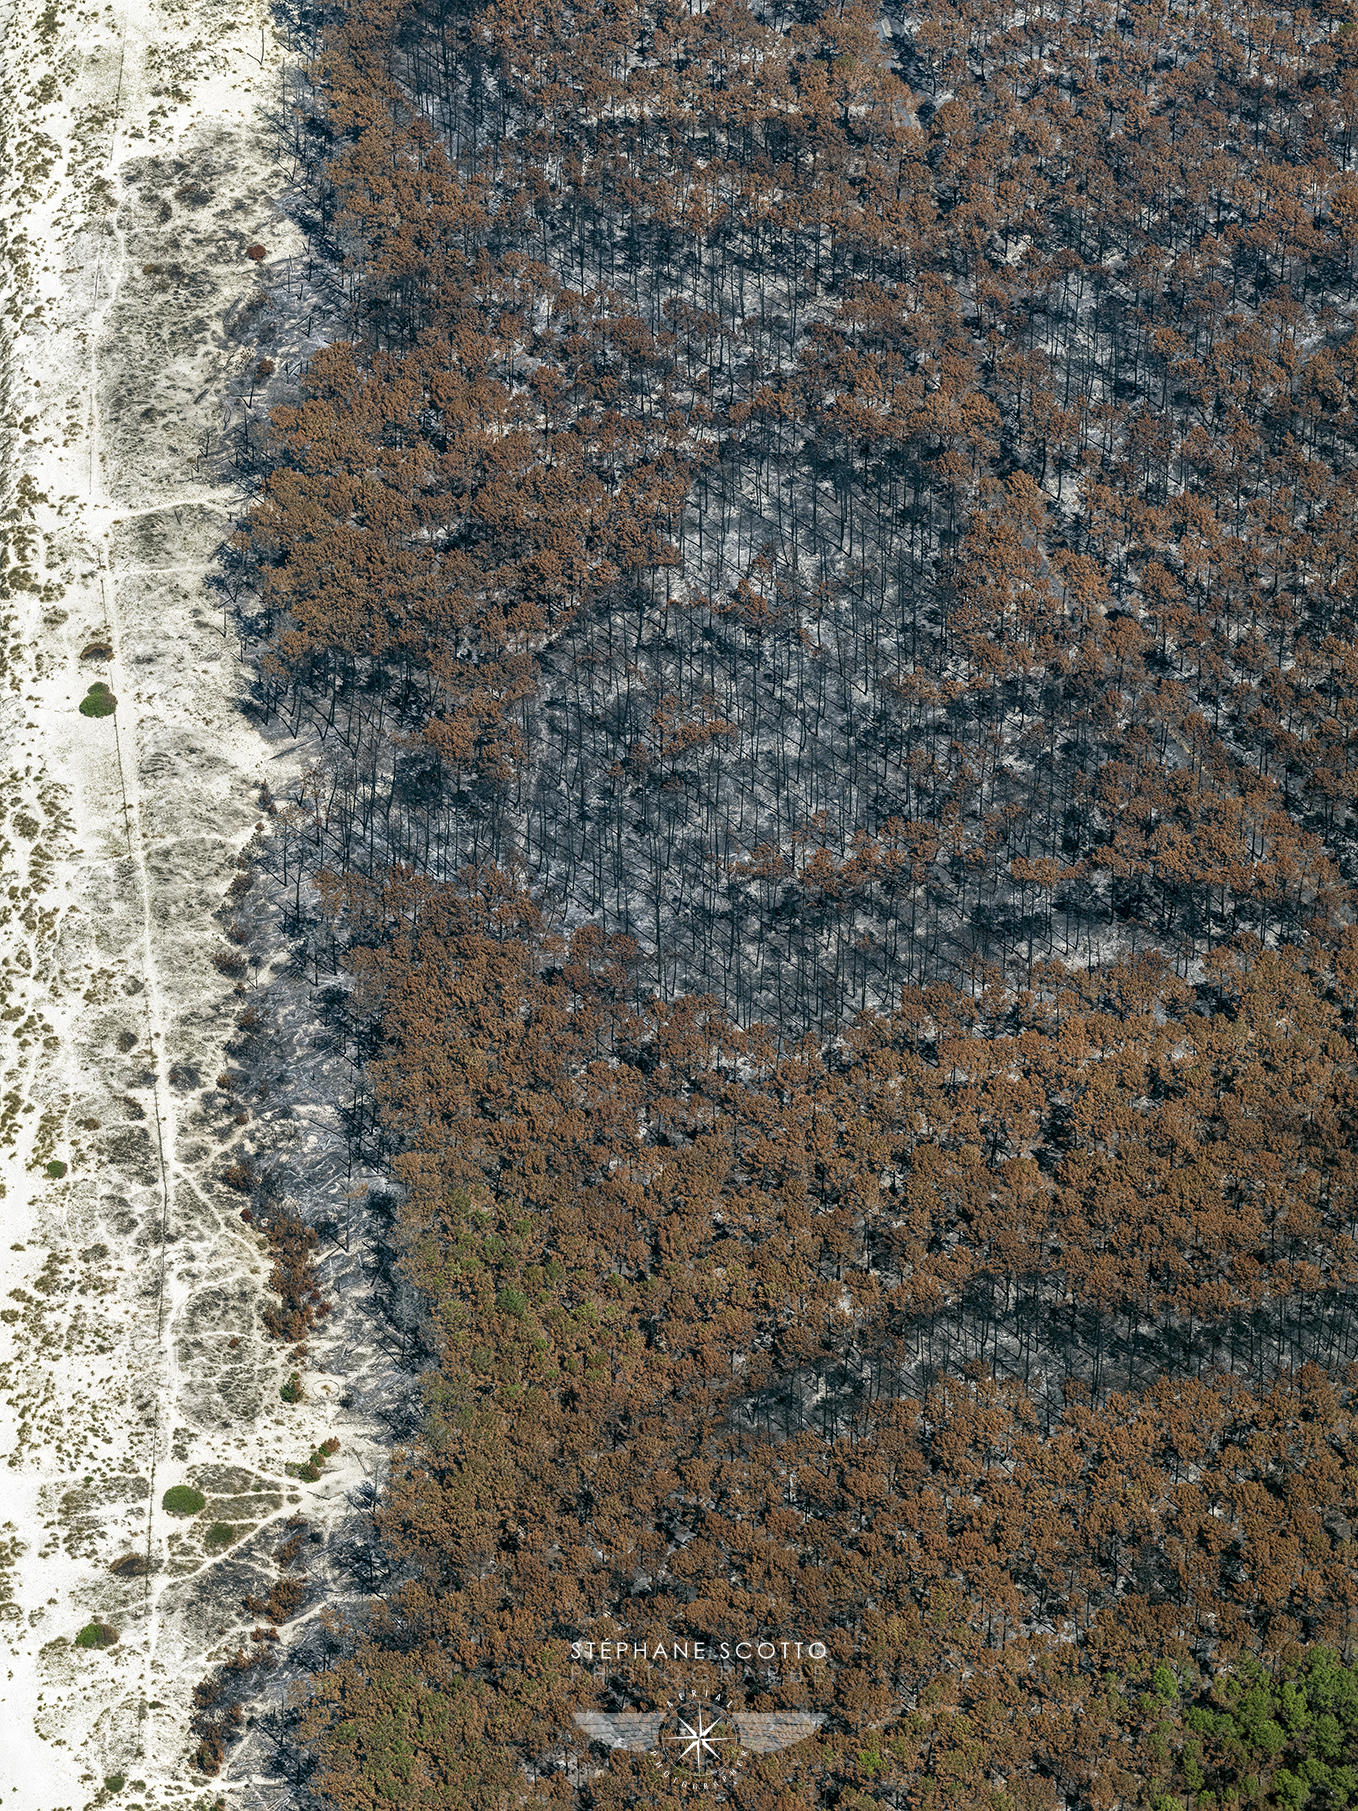 photo aérienne des incendies de la forêt de la Teste de Buch